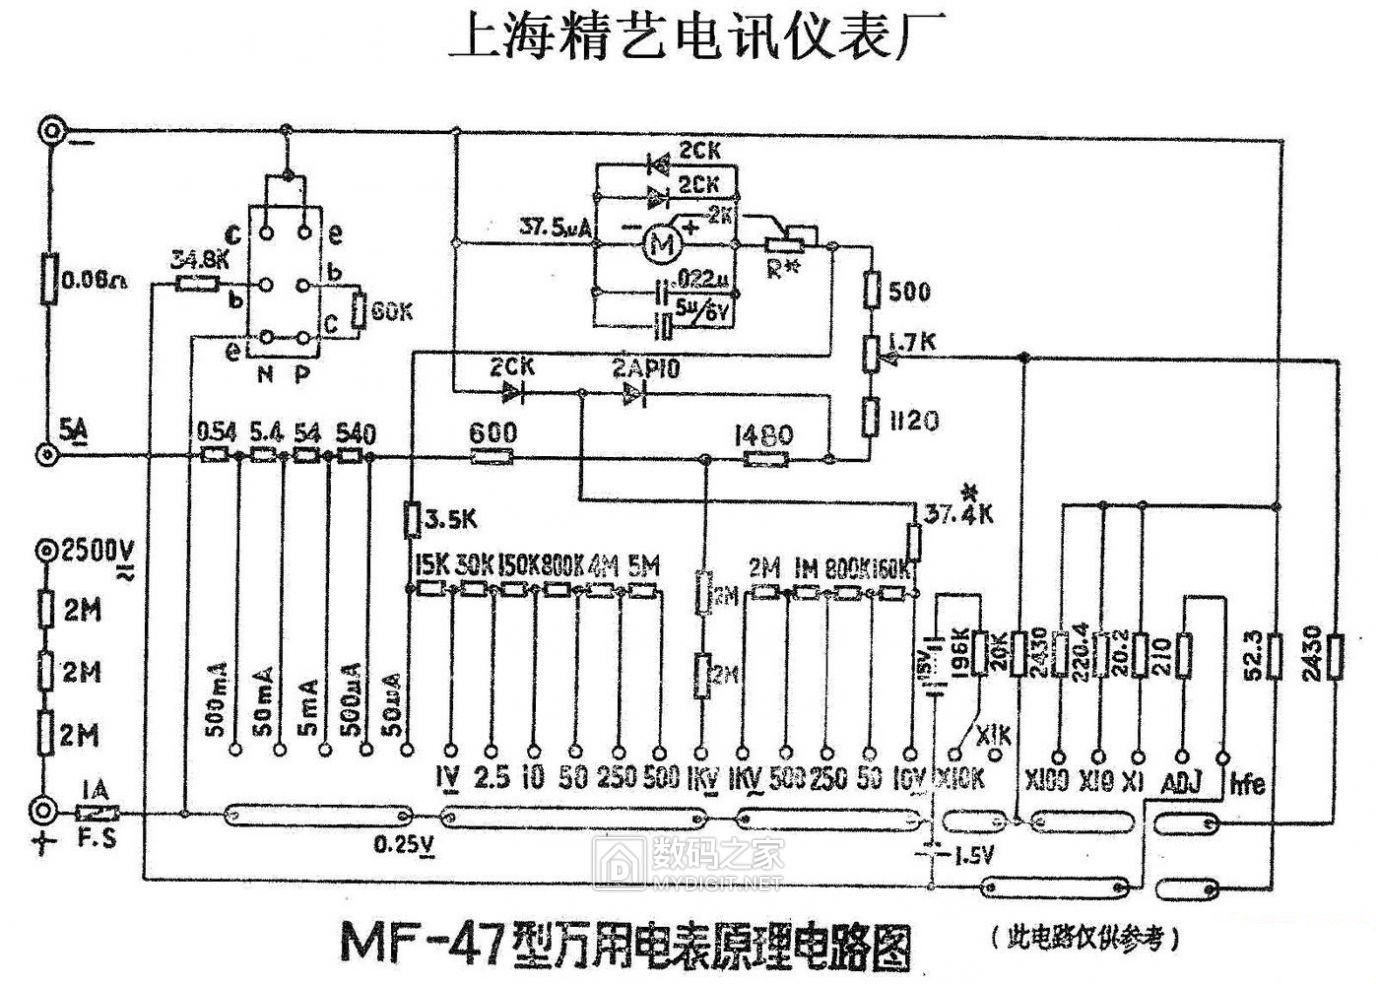 上海精艺MF47型表电路图(20180730)-02.jpg